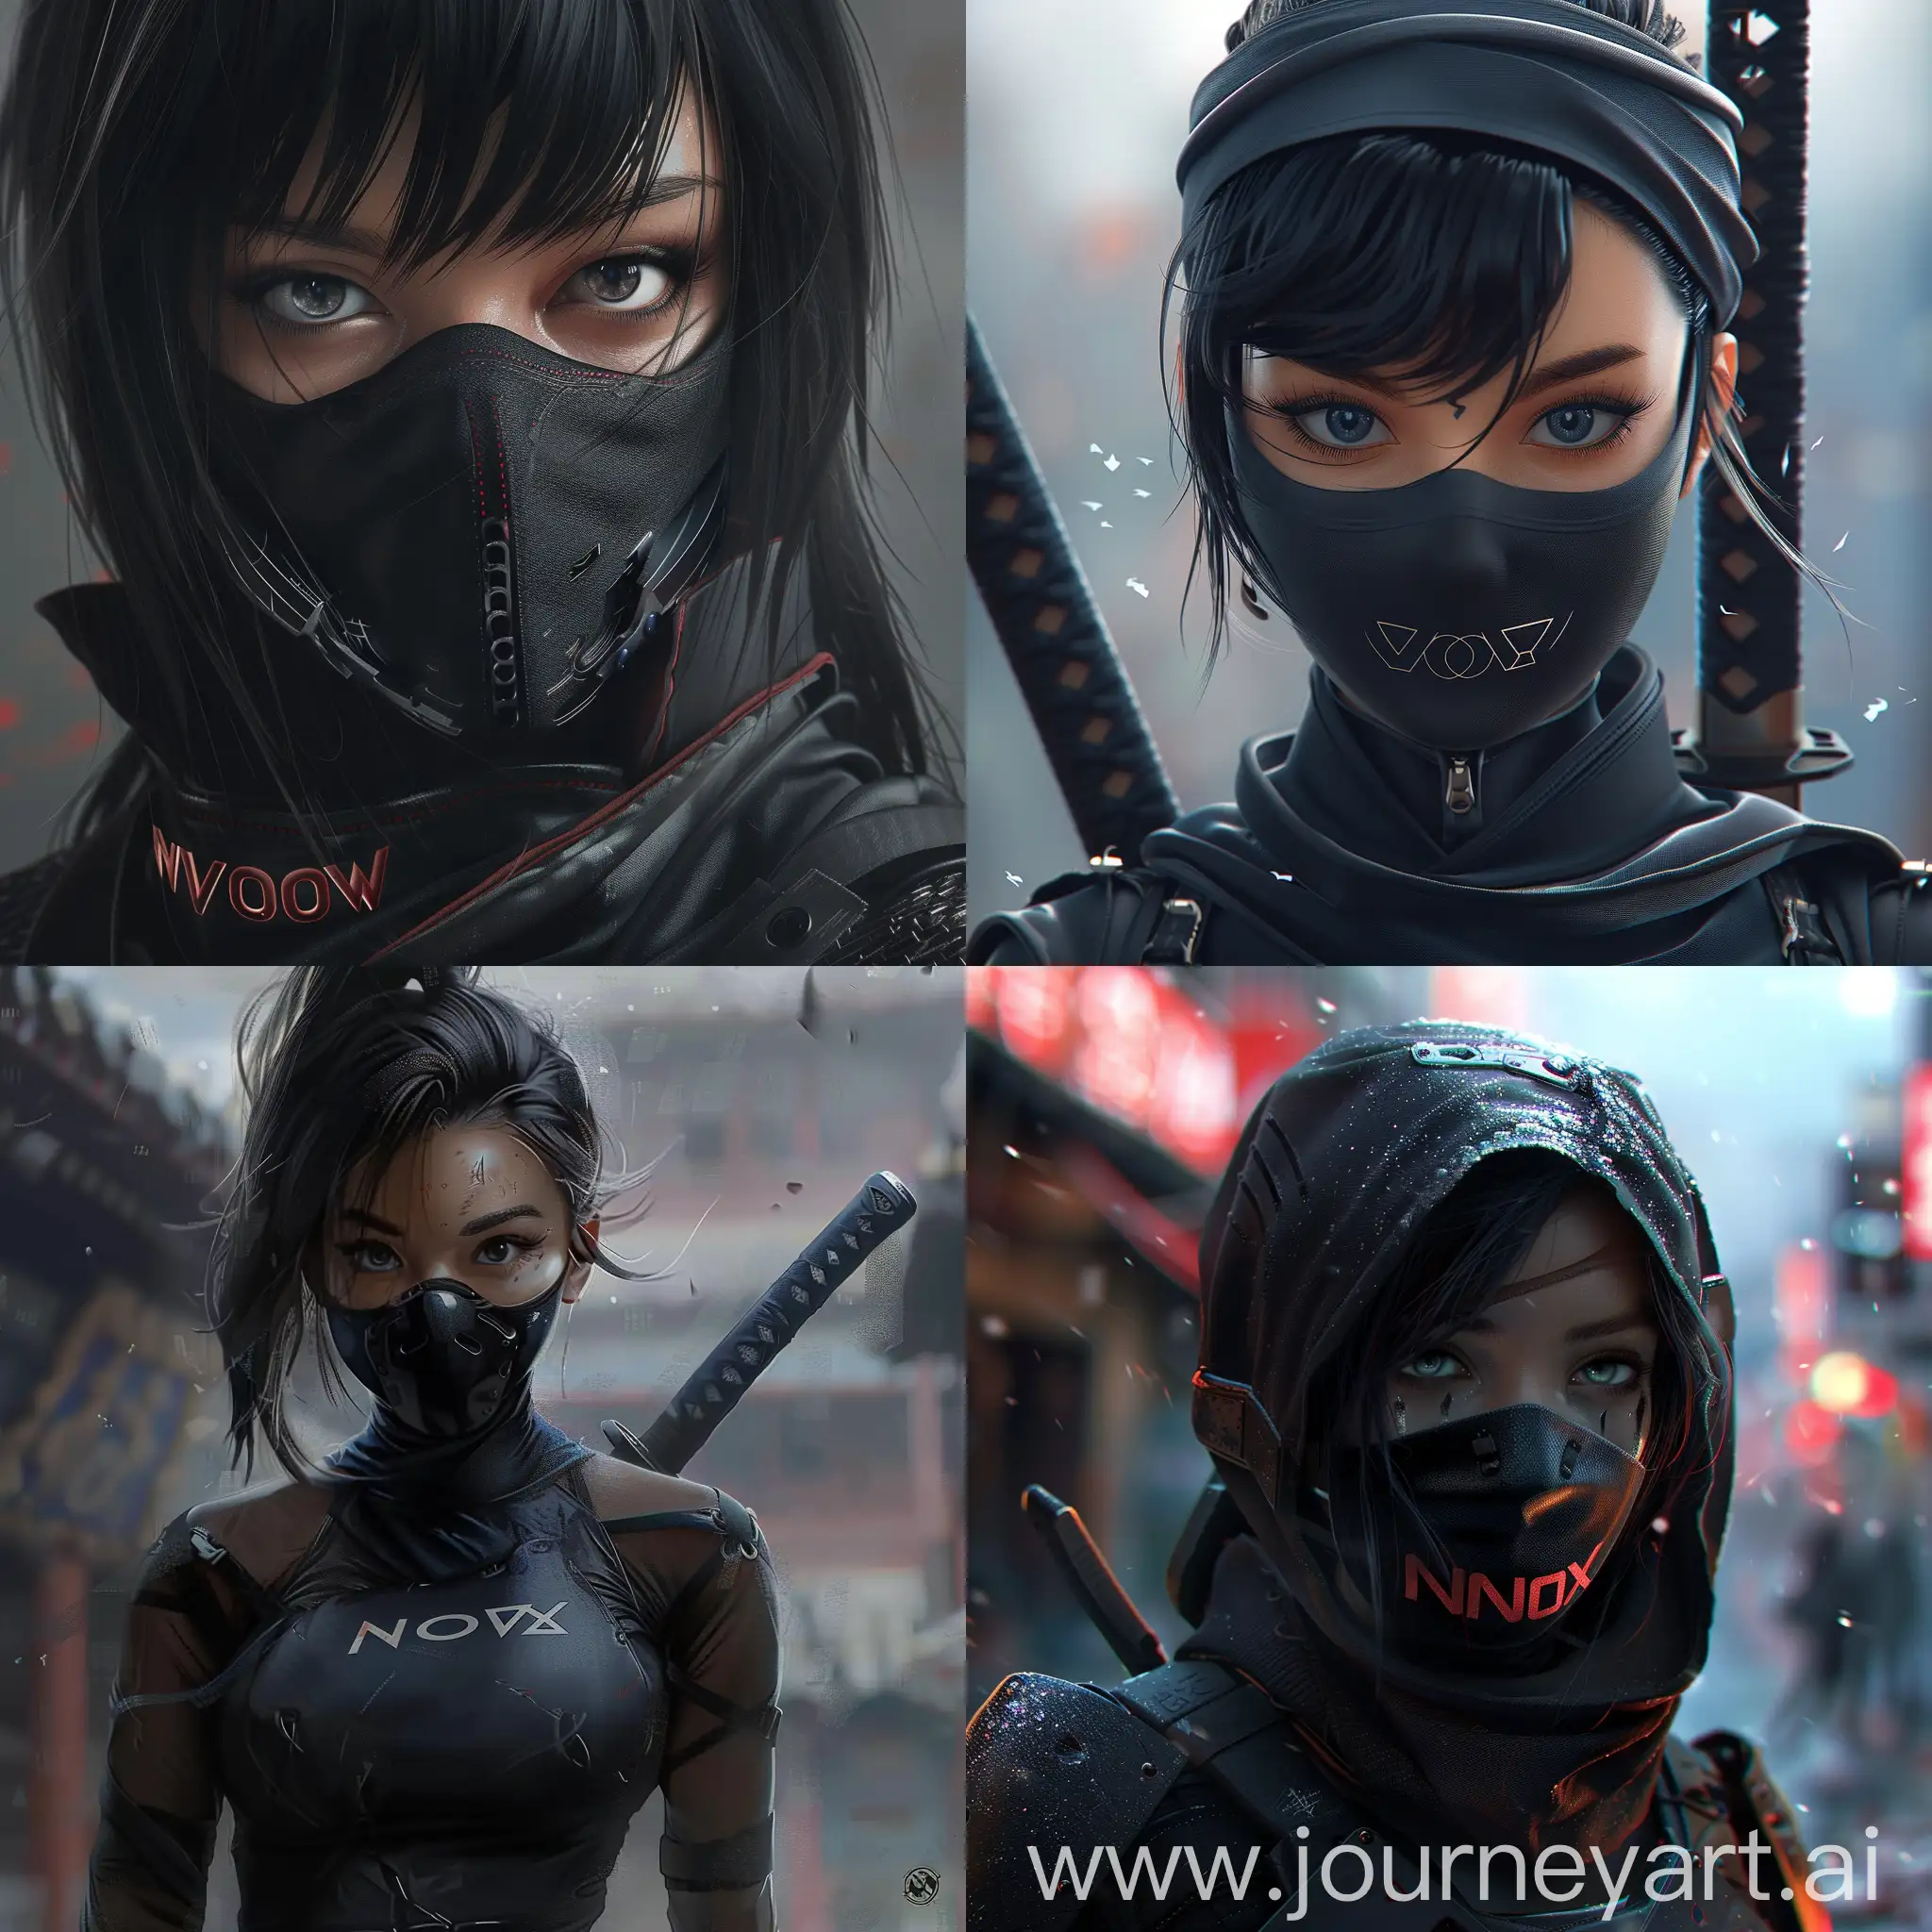 realistic , ninja girl, The one with NOVA written on it
